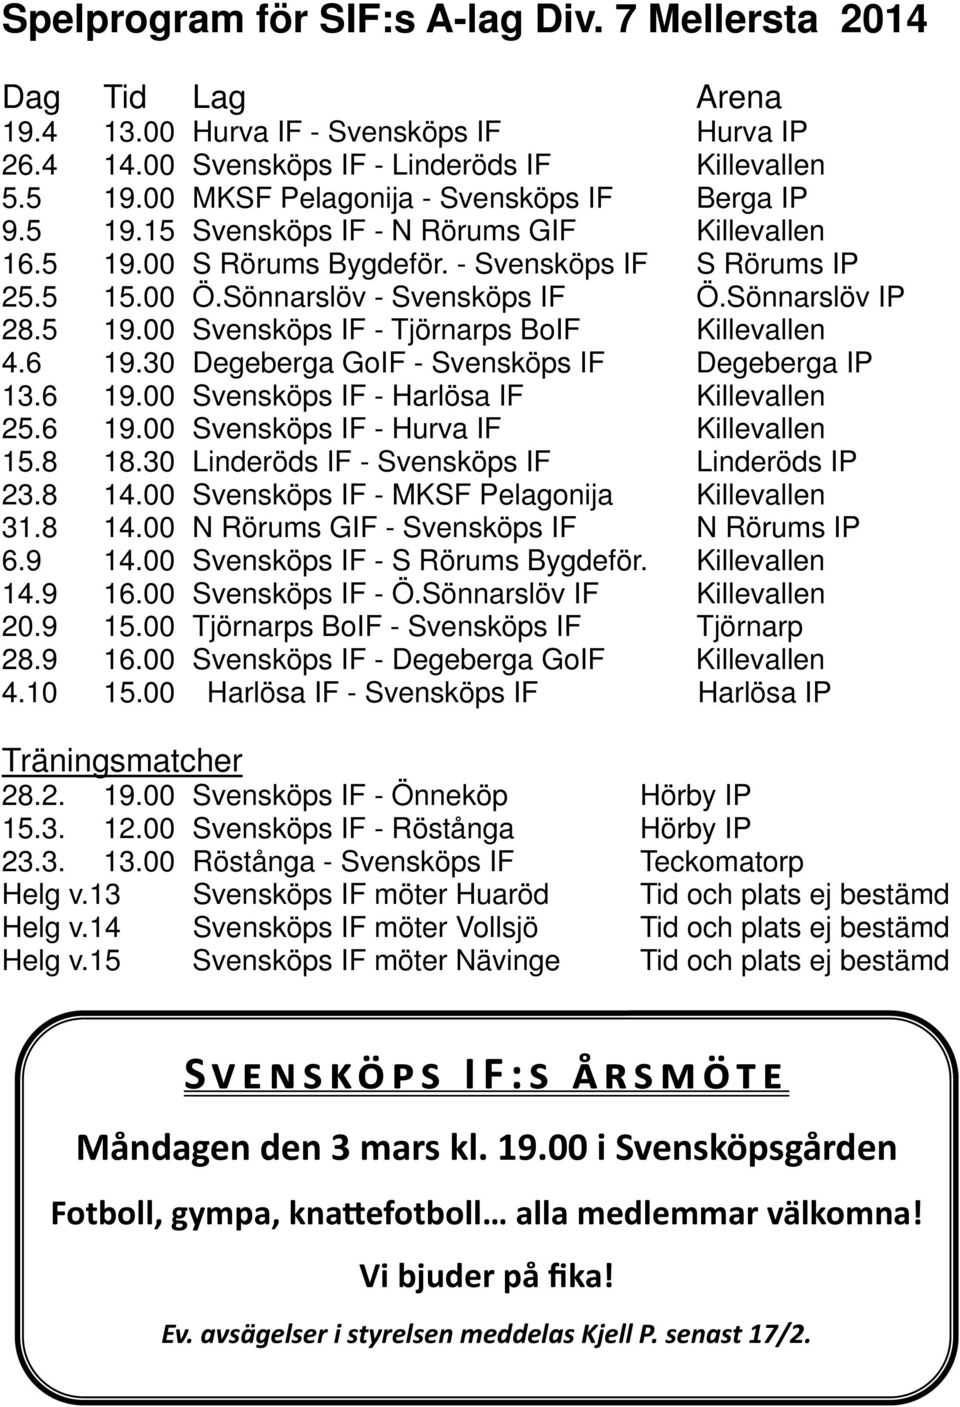 Sönnarslöv IP 28.5 19.00 Svensköps IF - Tjörnarps BoIF Killevallen 4.6 19.30 Degeberga GoIF - Svensköps IF Degeberga IP 13.6 19.00 Svensköps IF - Harlösa IF Killevallen 25.6 19.00 Svensköps IF - Hurva IF Killevallen 15.